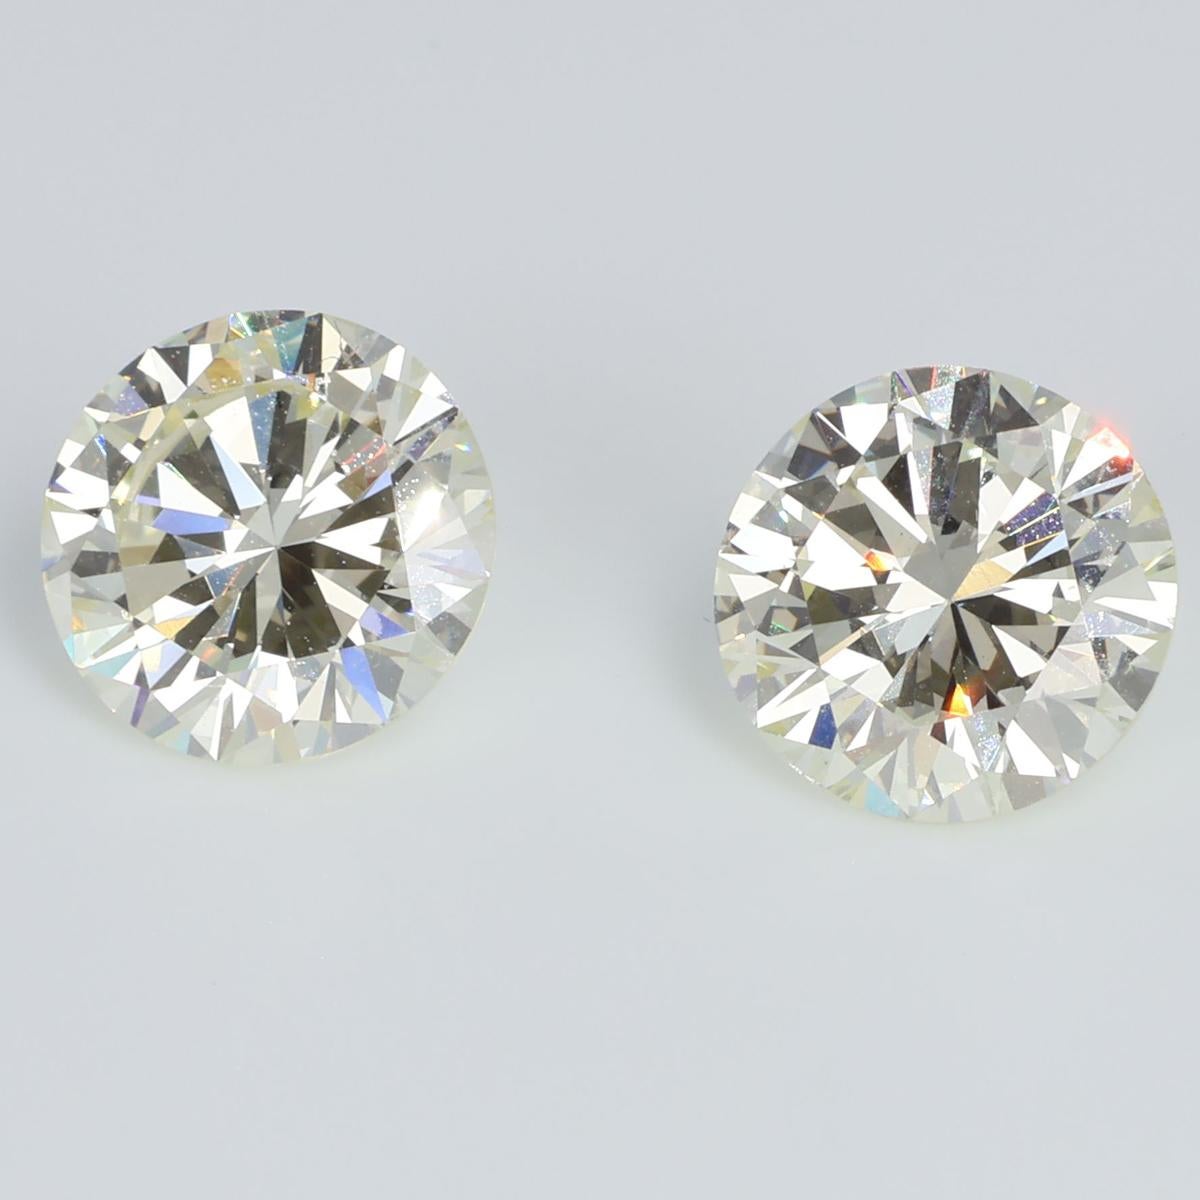 Duo de splendeurs et de nuances subtiles, ces diamants jumeaux de 2,12 ct chacun dansent d'une lumière éthérée, capturant l'essence du raffinement. D'une clarté VS1, ils présentent une pureté cristalline qui défie les limites de l'imagination. La